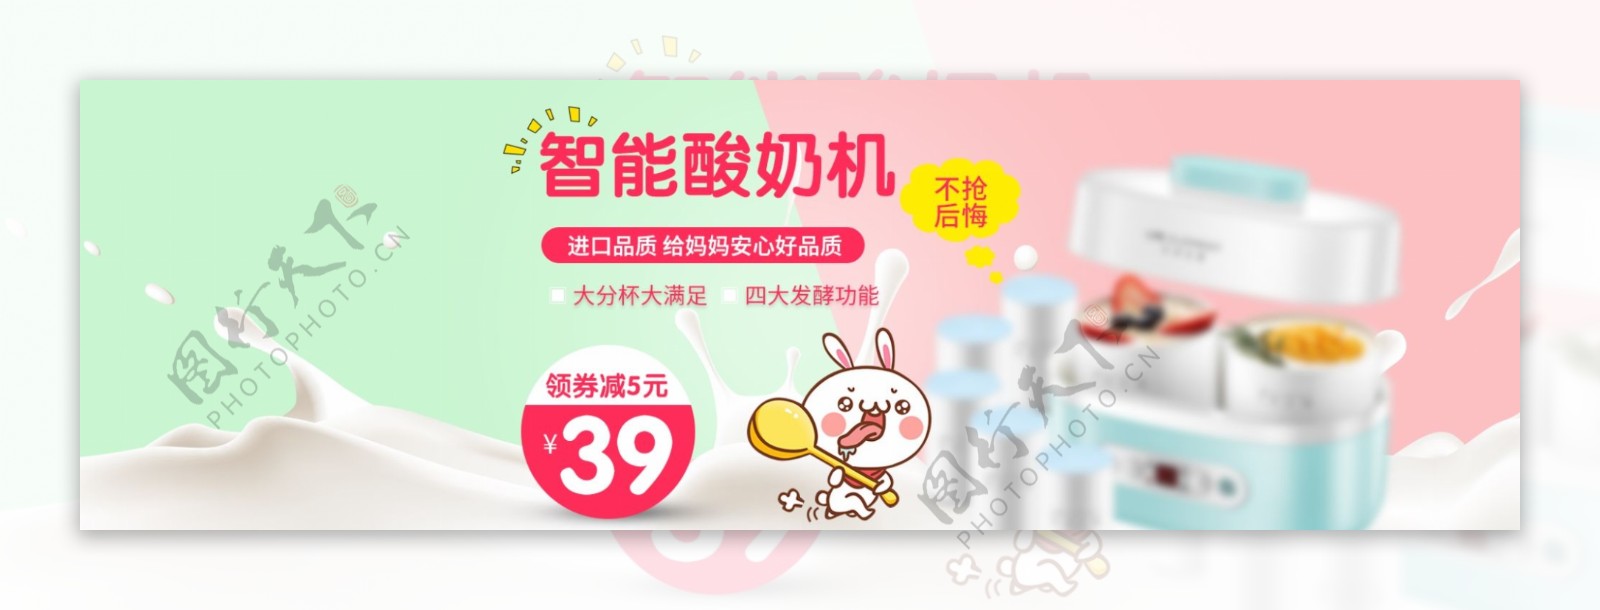 淘宝天猫智能酸奶机促销海报psd素材